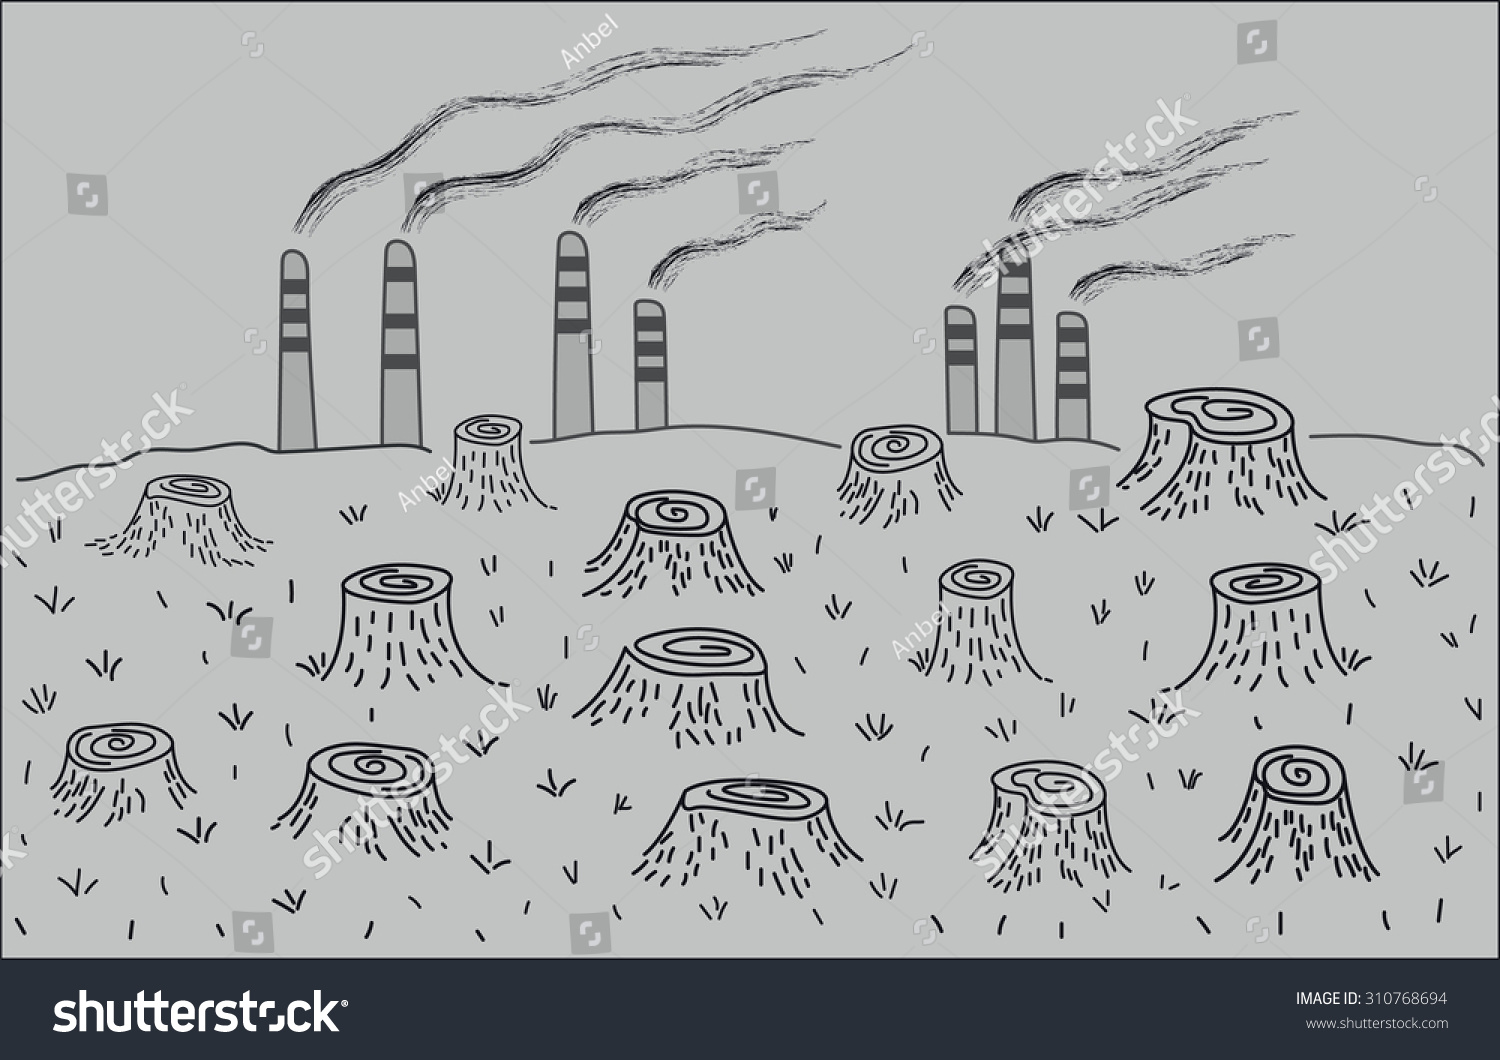 Экологическая катастрофа рисунок